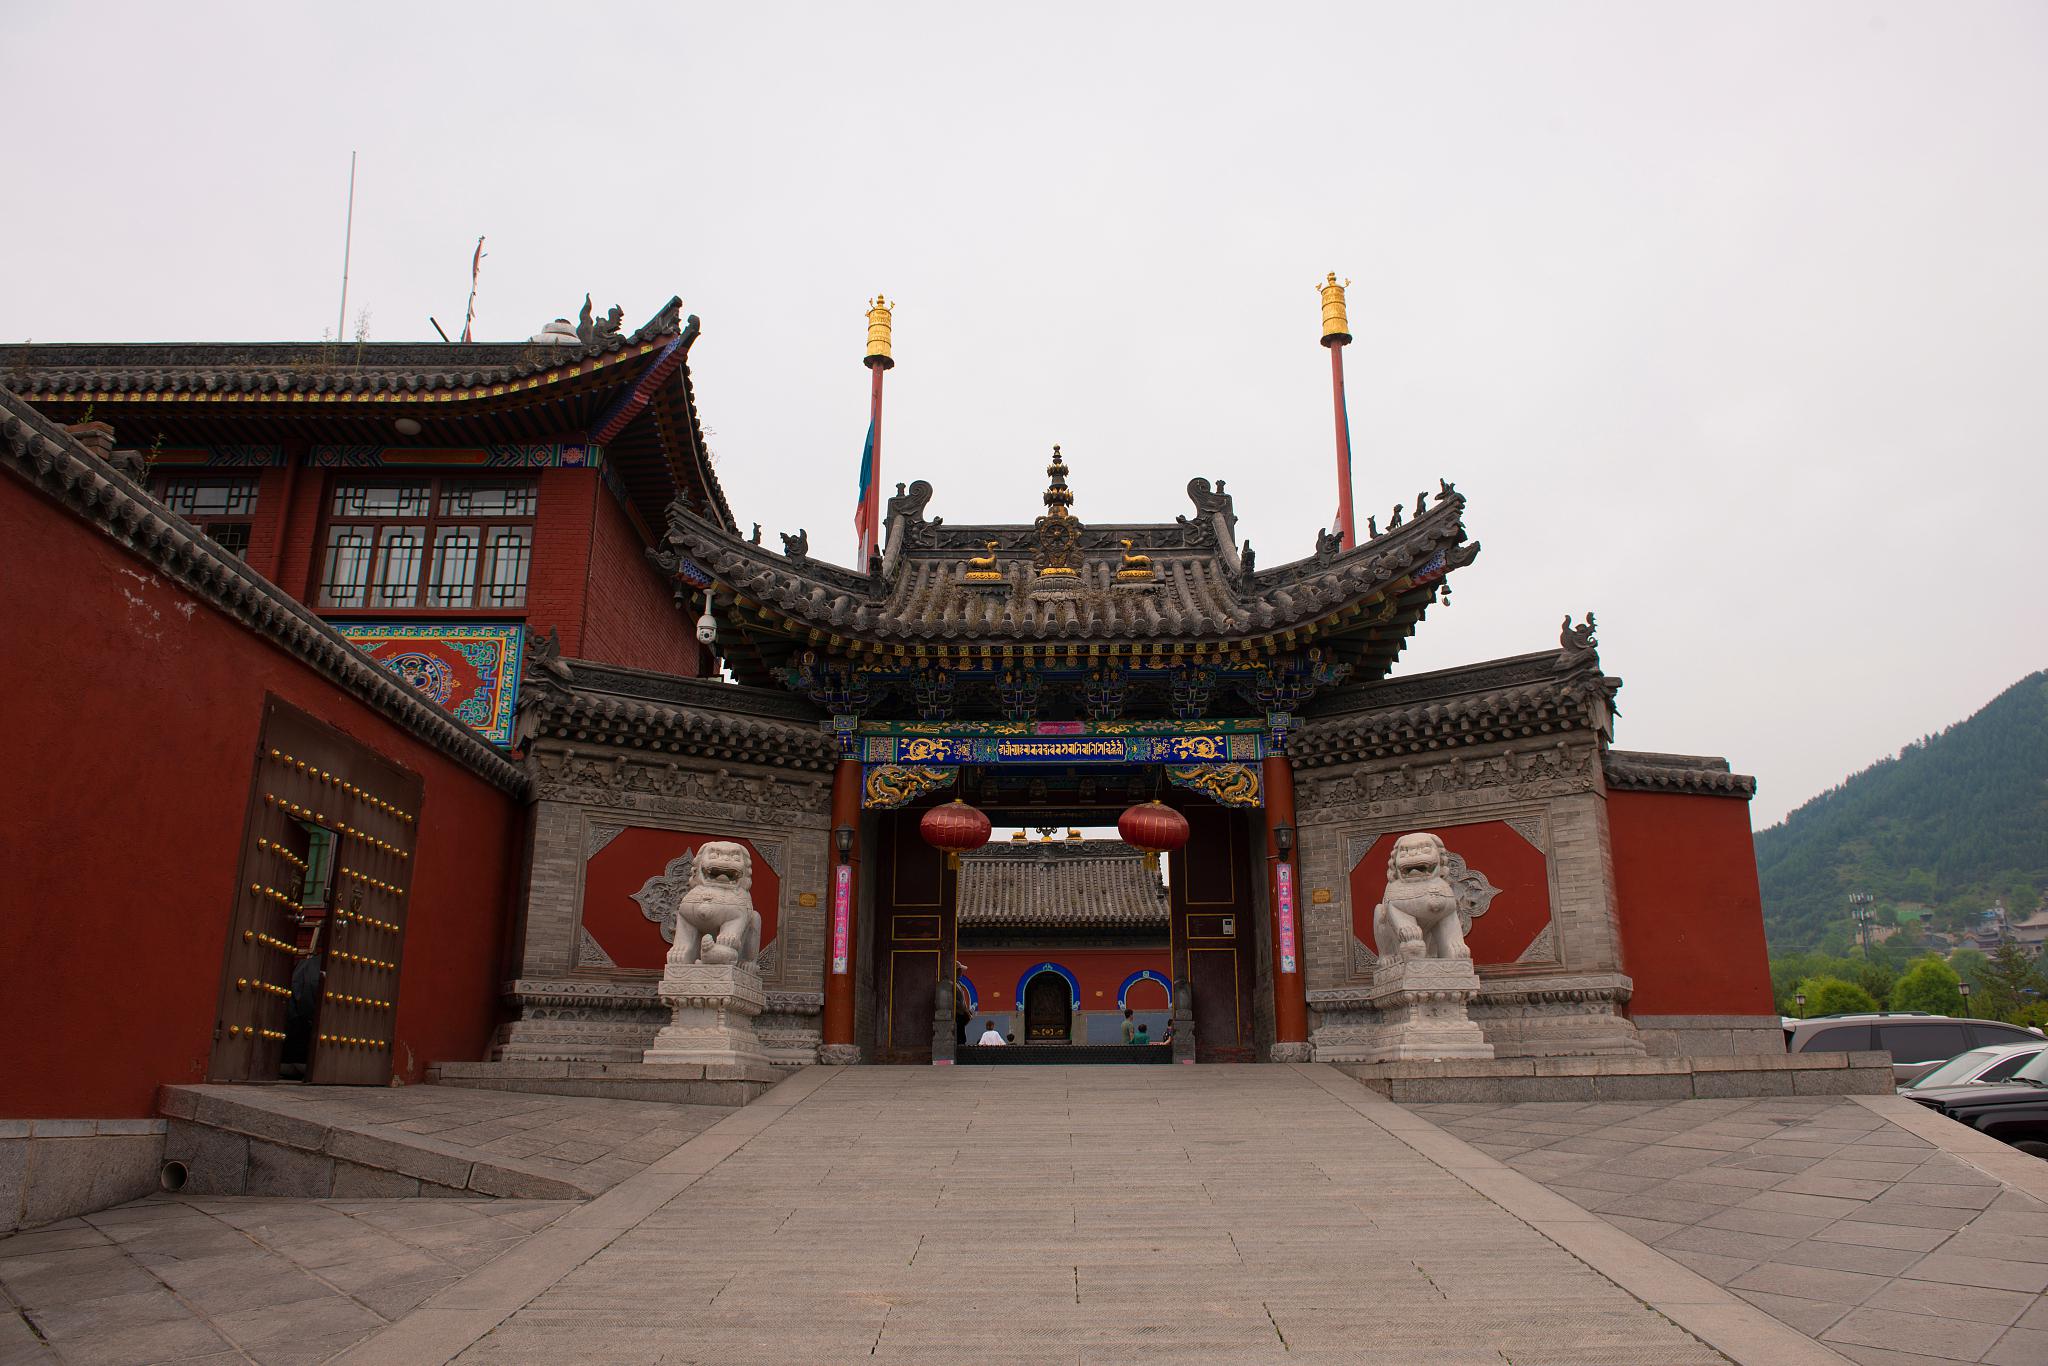 五台山金界寺:历史与神秘的佛教圣地 五台山金界寺,位于五台山黛螺顶